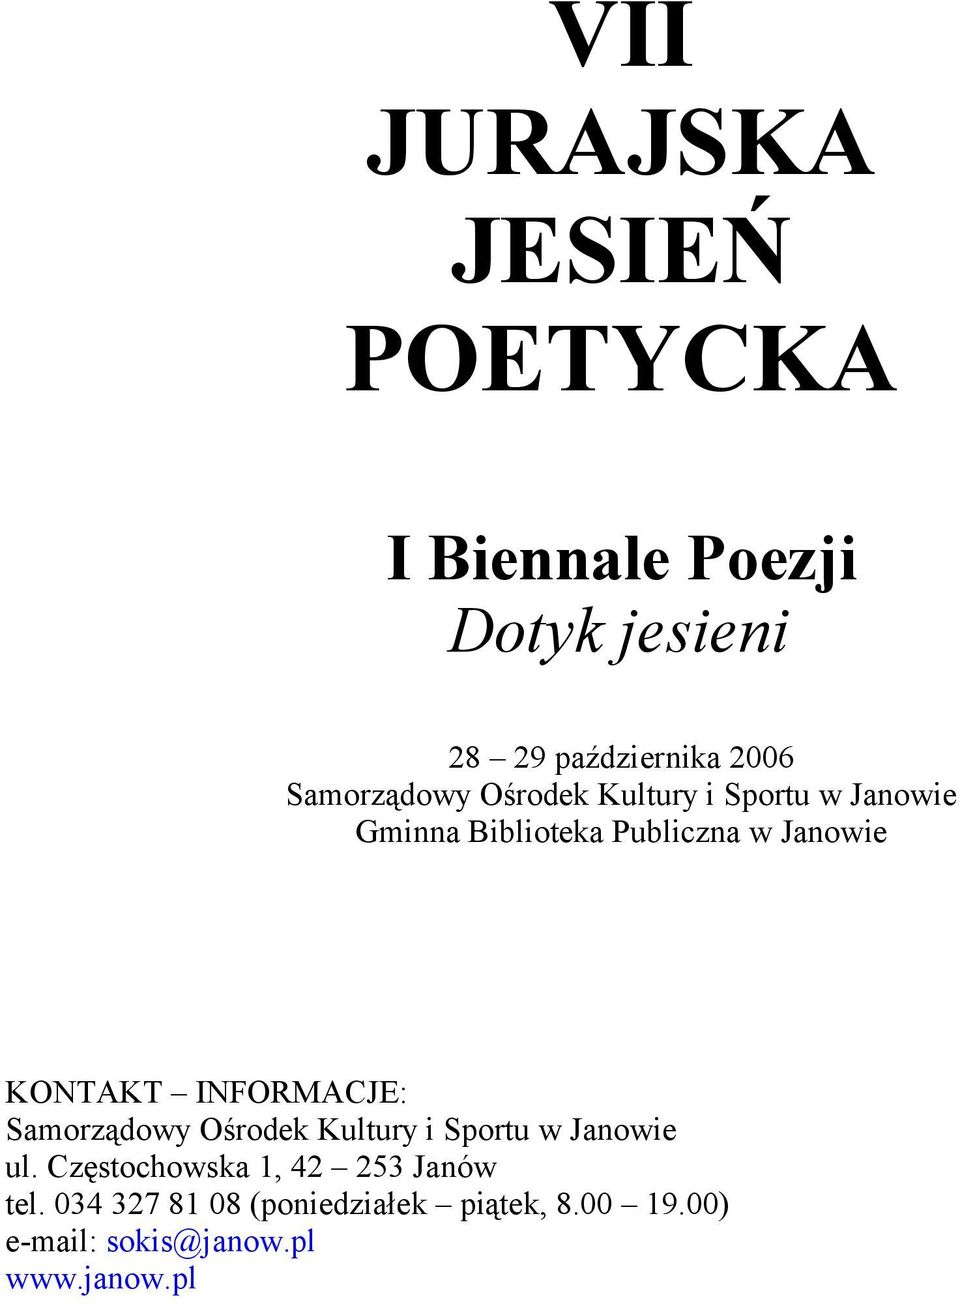 INFORMACJE: ul. Częstochowska 1, 42 253 Janów tel.